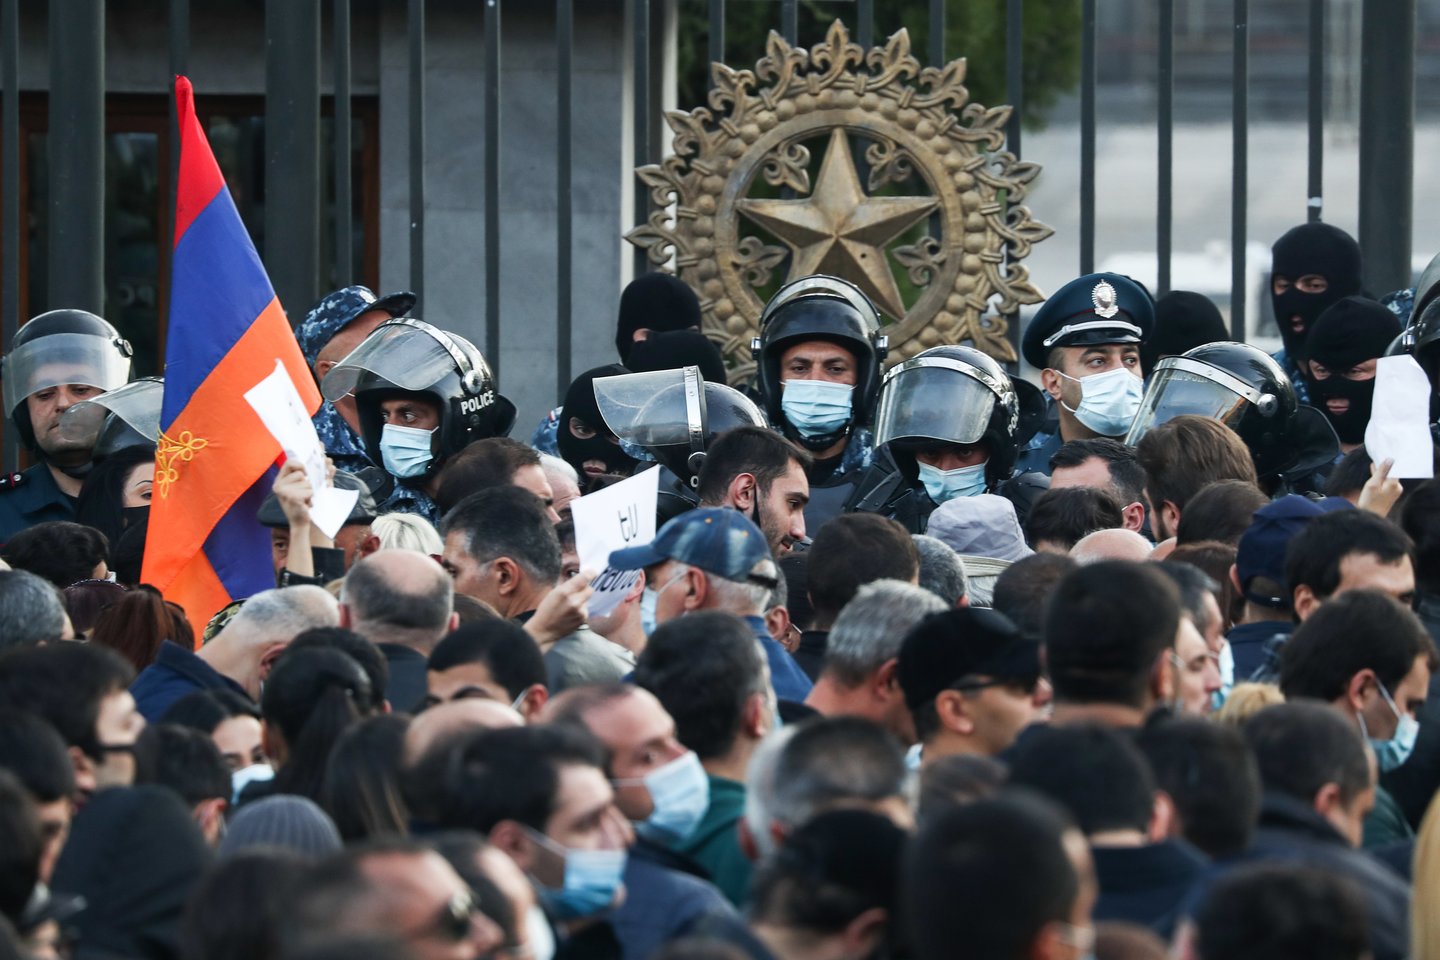 Įniršę armėnai protestuose tvirtina, kad nusileisdama valdžia išdavė žmones.<br> TASS/Scanpix nuotr.